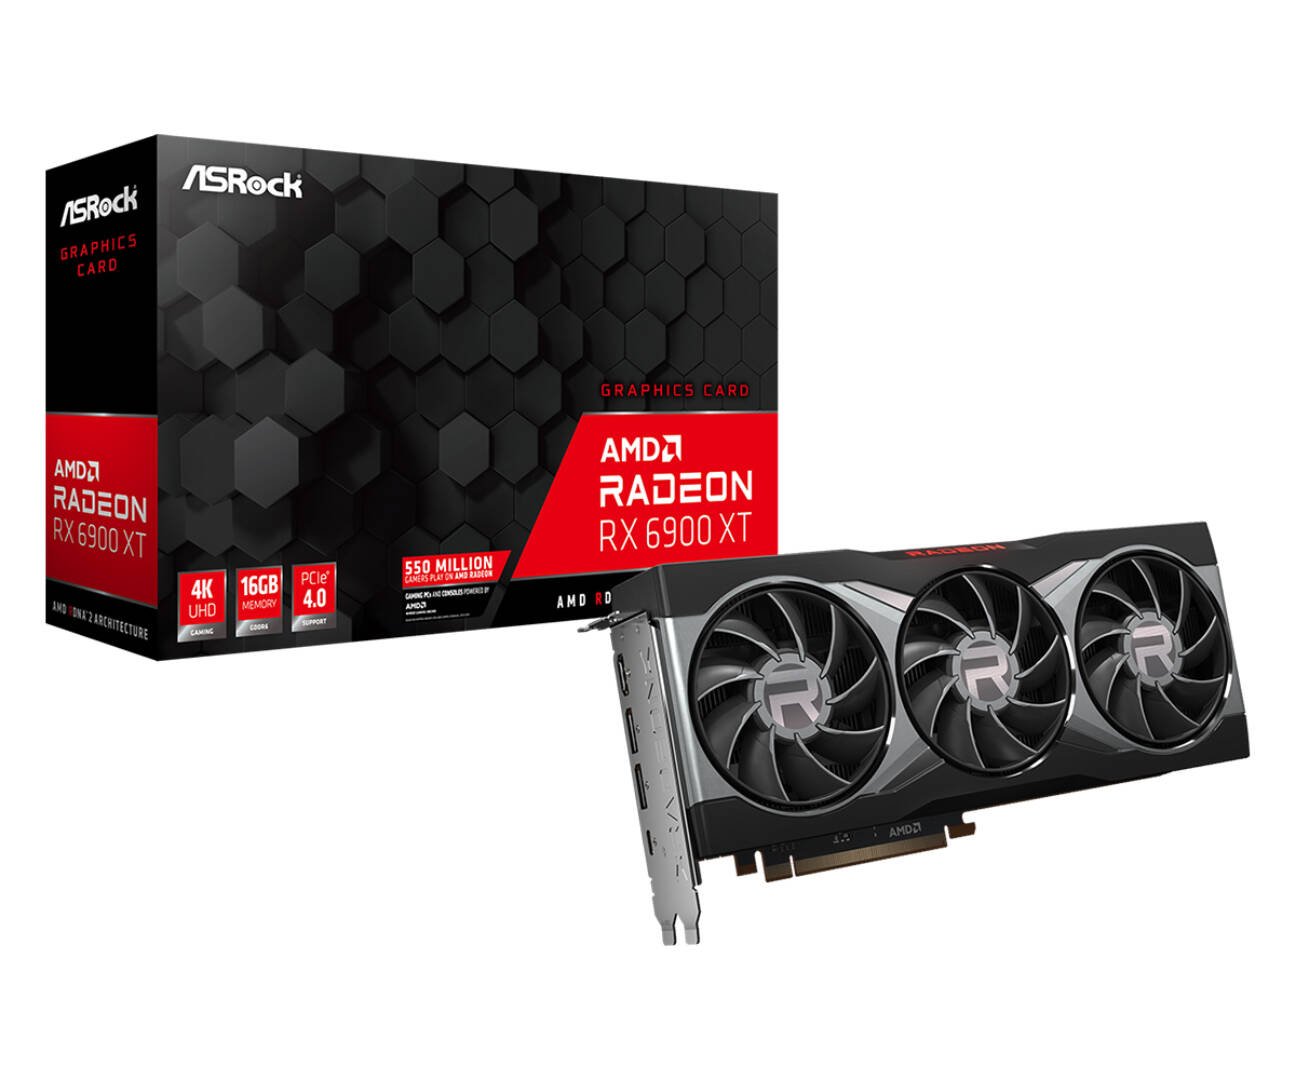 Immagine di Radeon RX 6900 XT, ecco la prima proposta ASRock con design reference